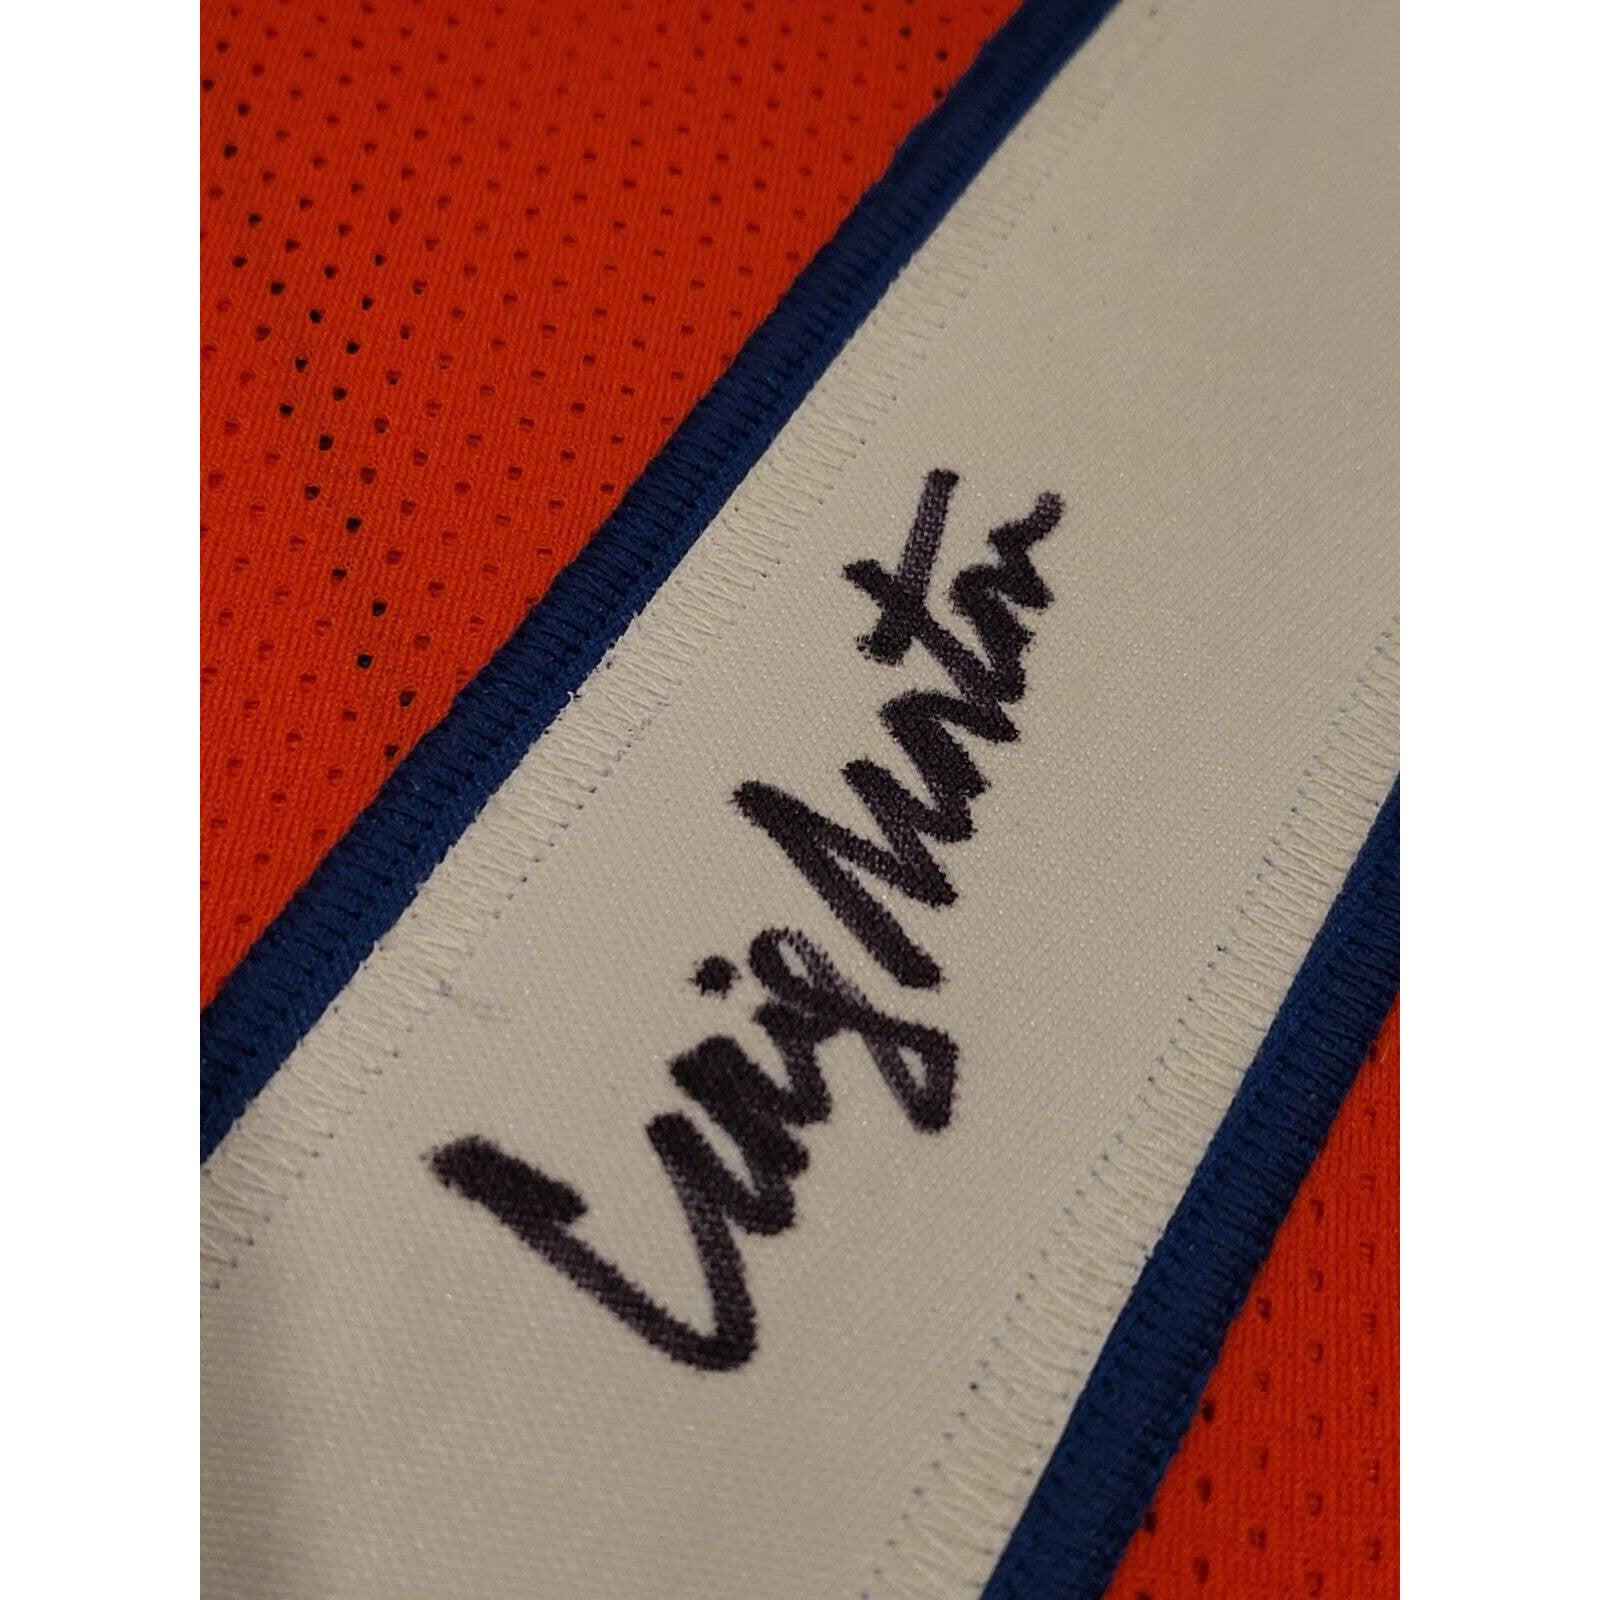 Craig Morton Autographed/Signed Jersey JSA COA Denver Broncos - TreasuresEvolved